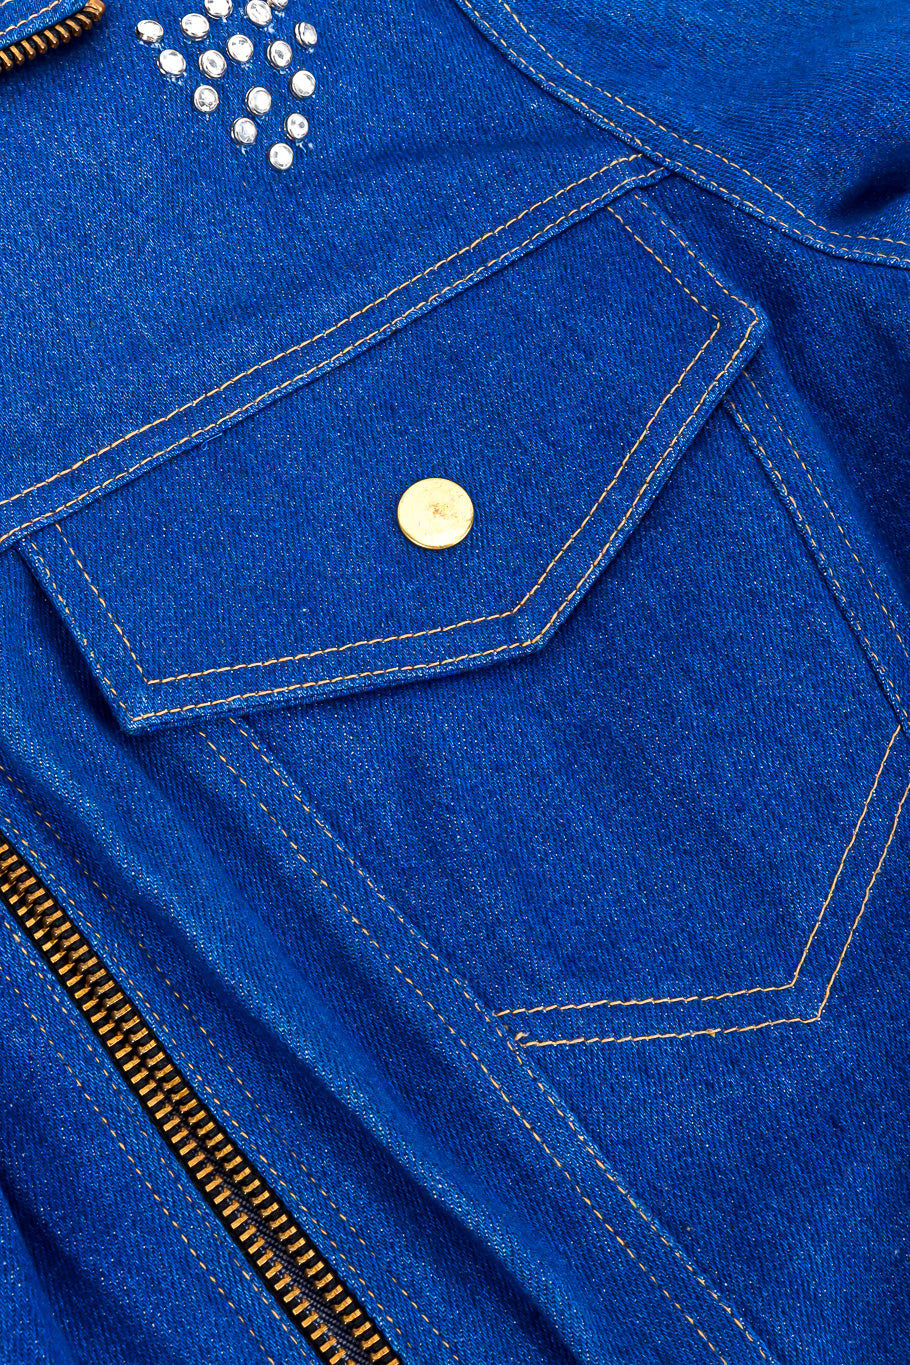 Vintage Lillie Rubin Crystal Studded Denim Jacket front flap pocket closeup @Recessla